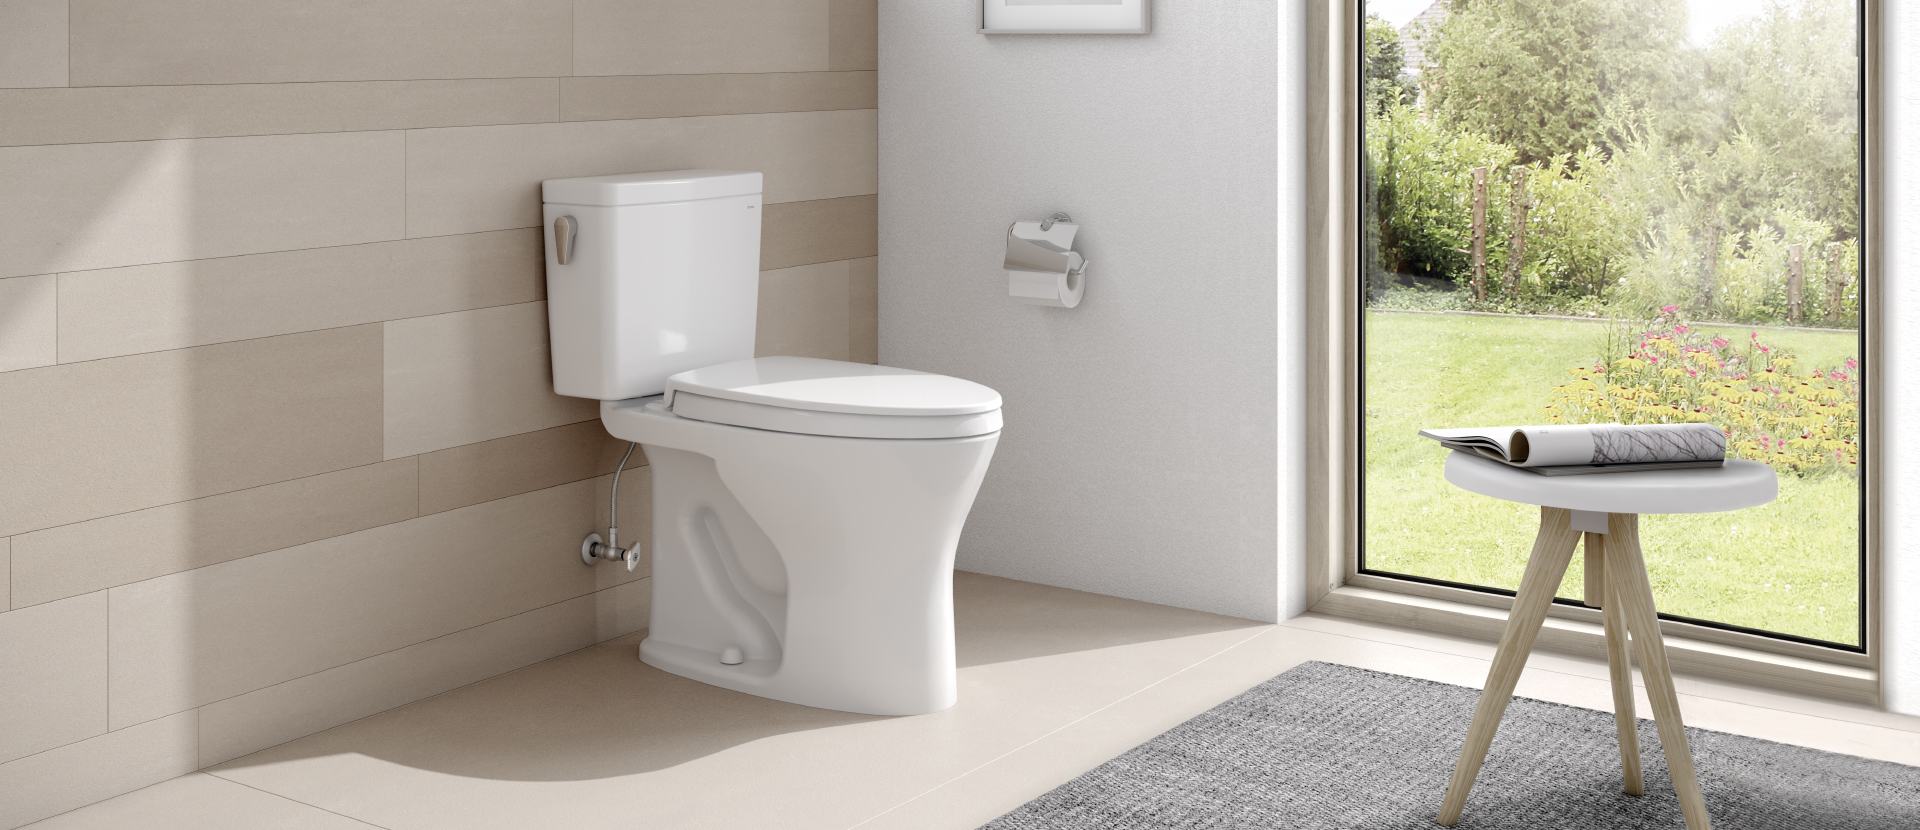 Image of TOTO's Drake II Toilet.